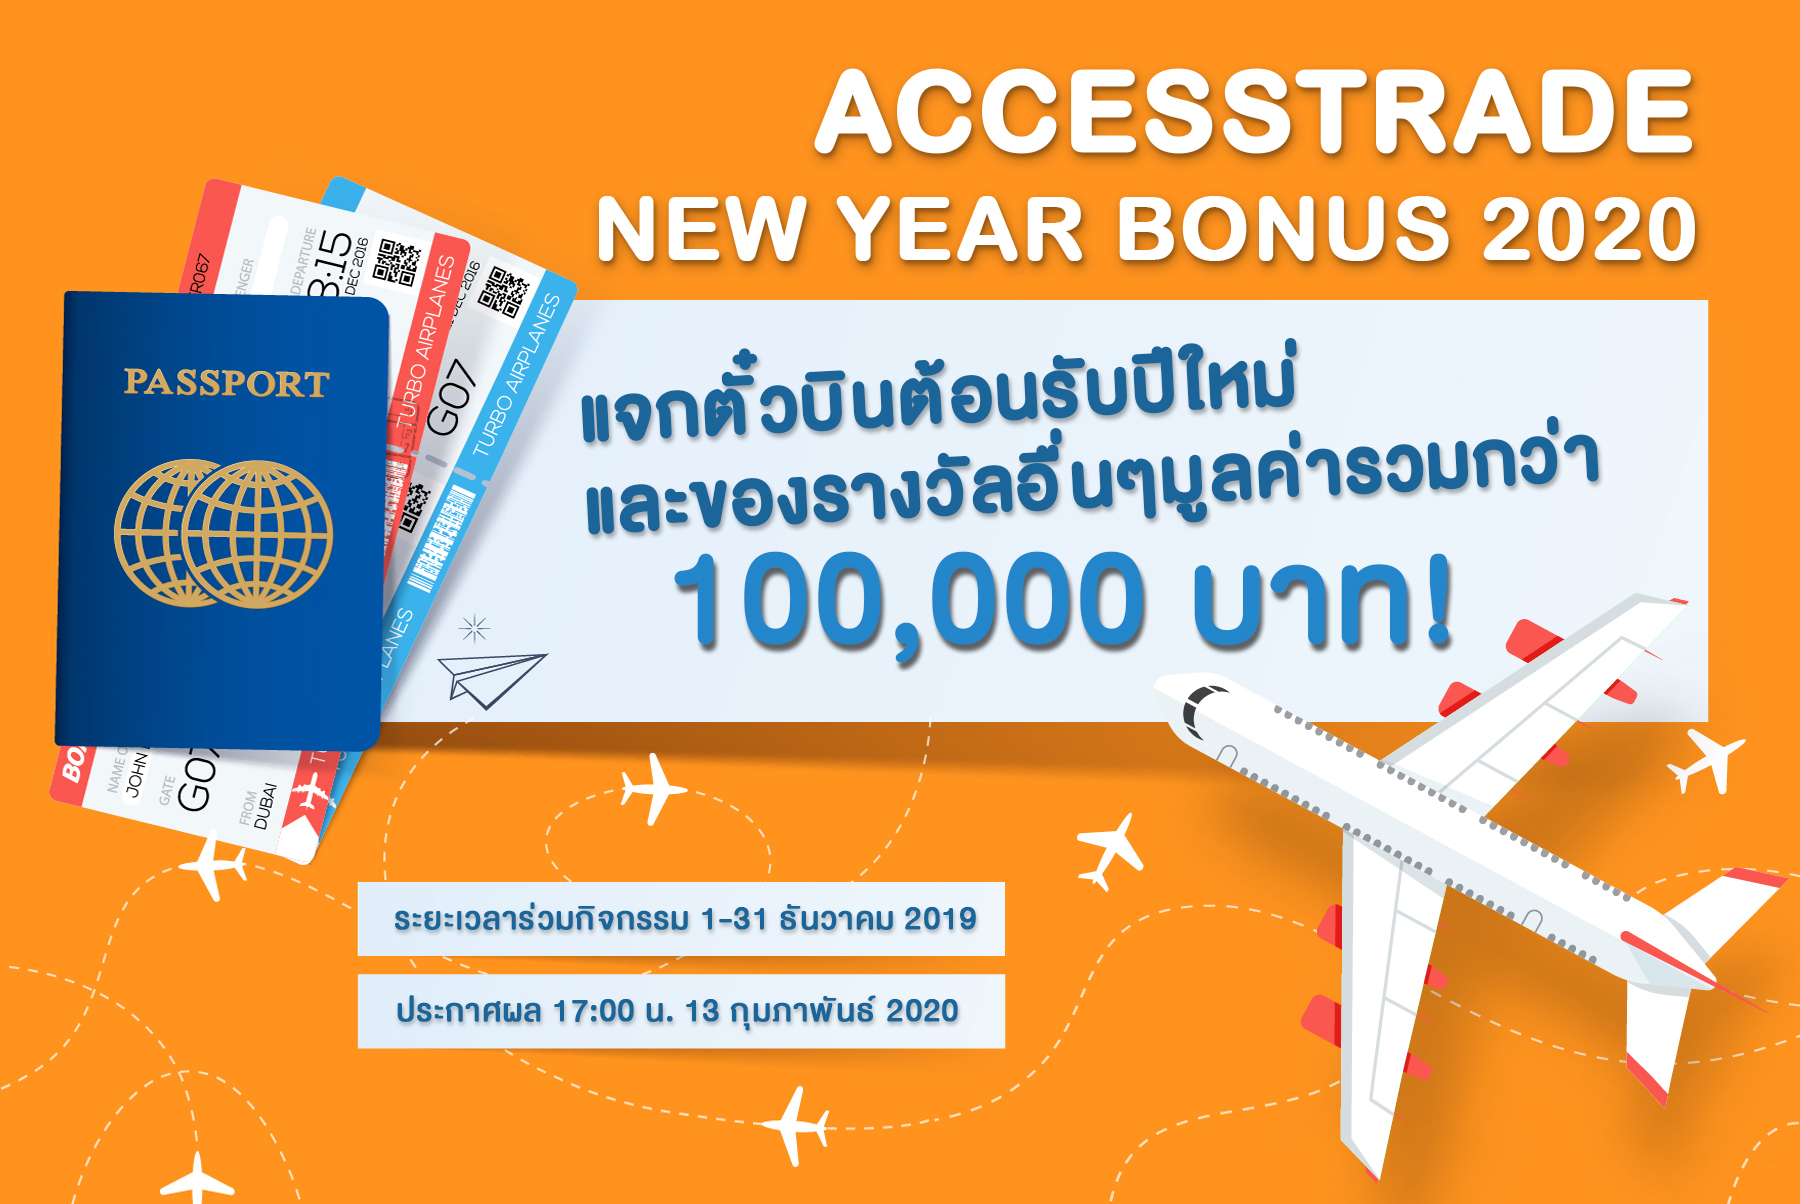 ห้ามพลาดกับกิจกรรมส่งท้ายปลายปีจากทาง ACCESSTRADE ประเทศไทยกับ NEW Year Bonus 2020 แจกตั๋วเครื่องบิน + ของรางวัลมูลค่ารวมกว่า 1 แสนบาท